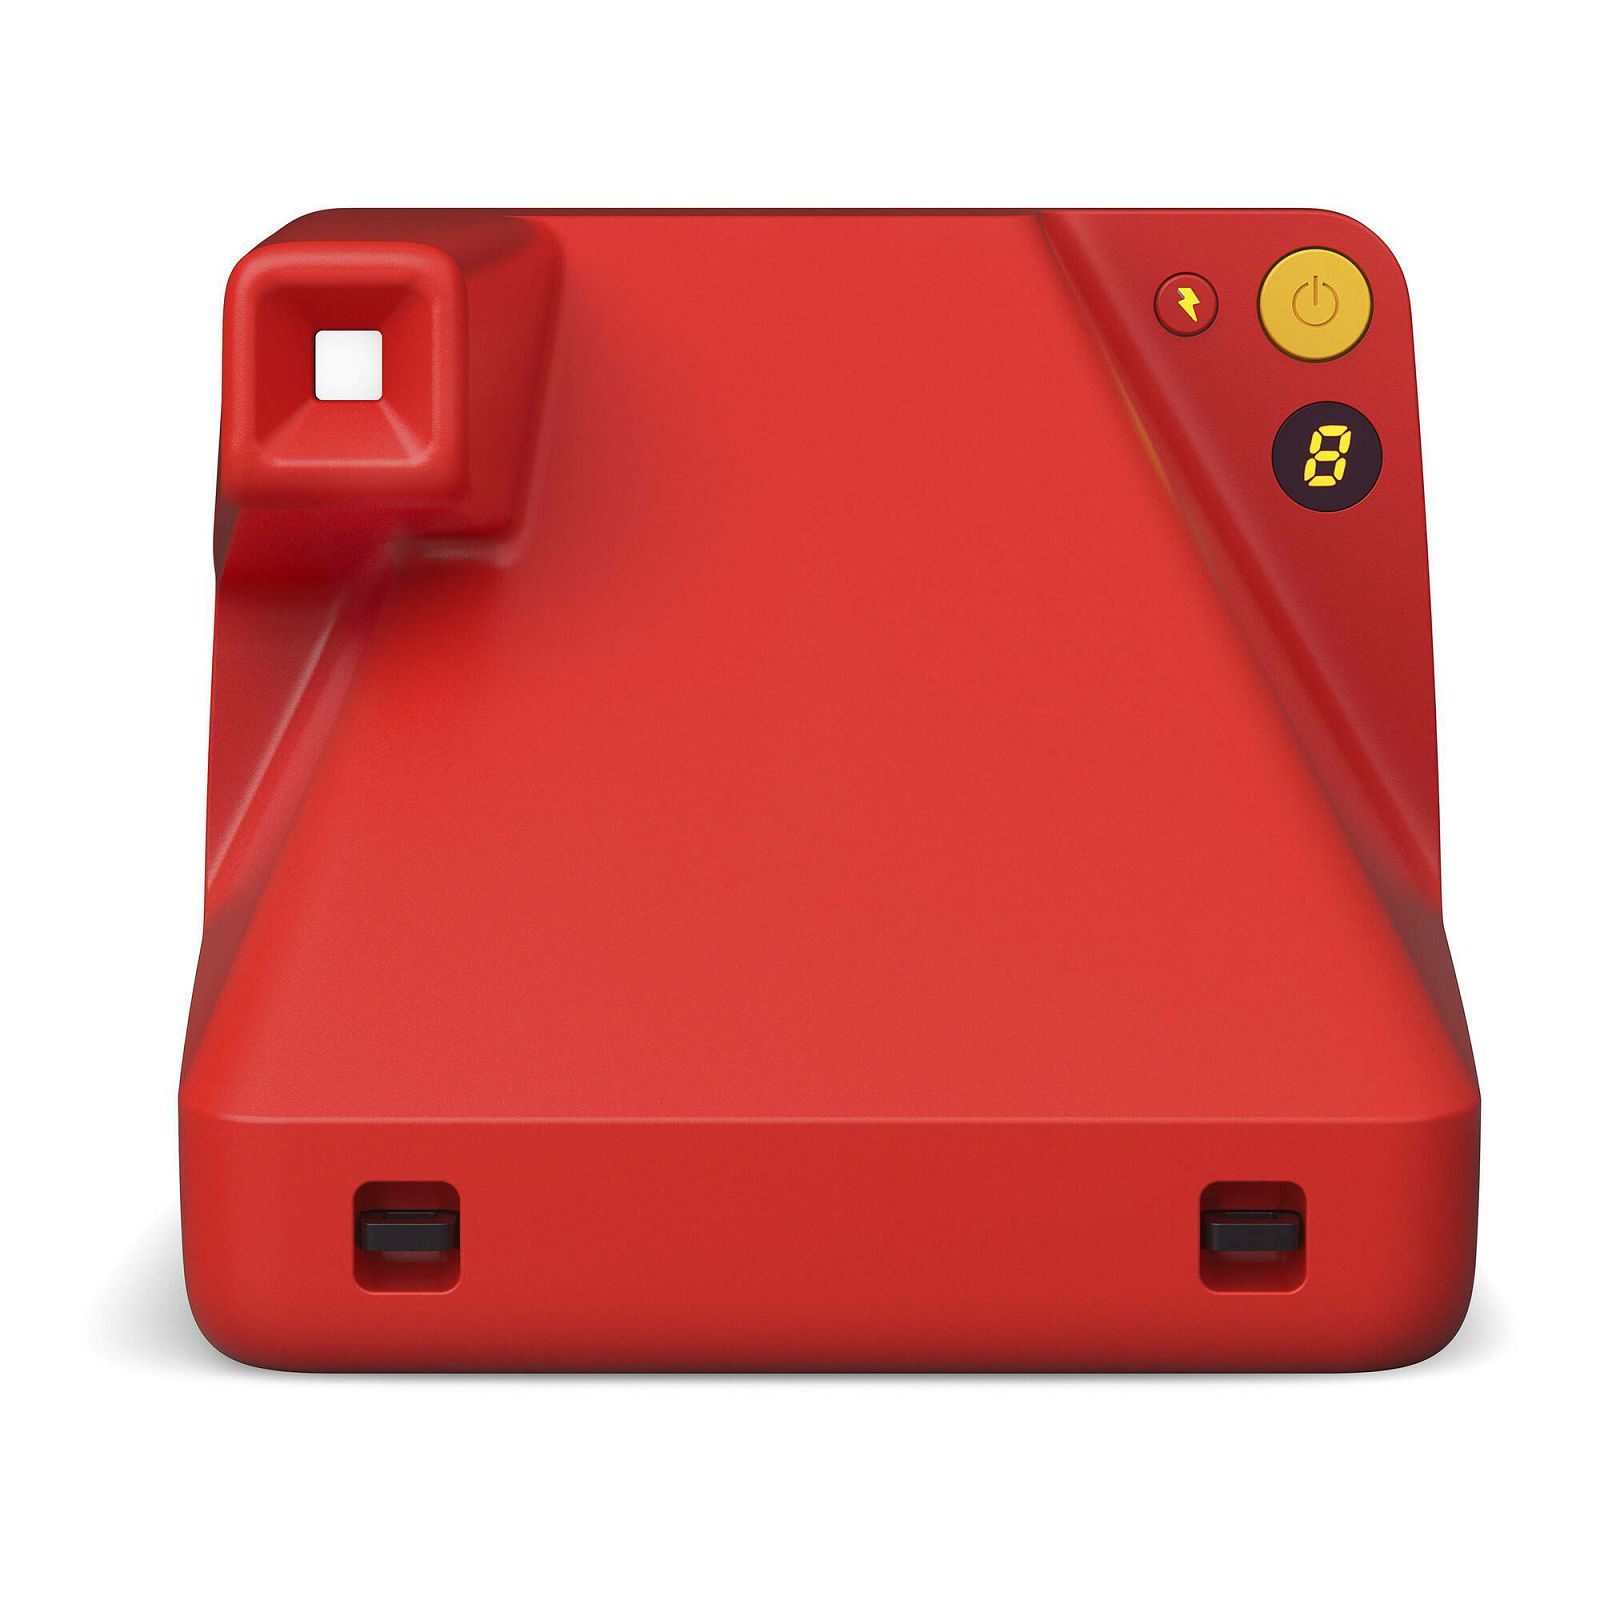 Polaroid Originals Now 2 Red crveni instant fotoaparat s trenutnim ispisom fotografije (009074)